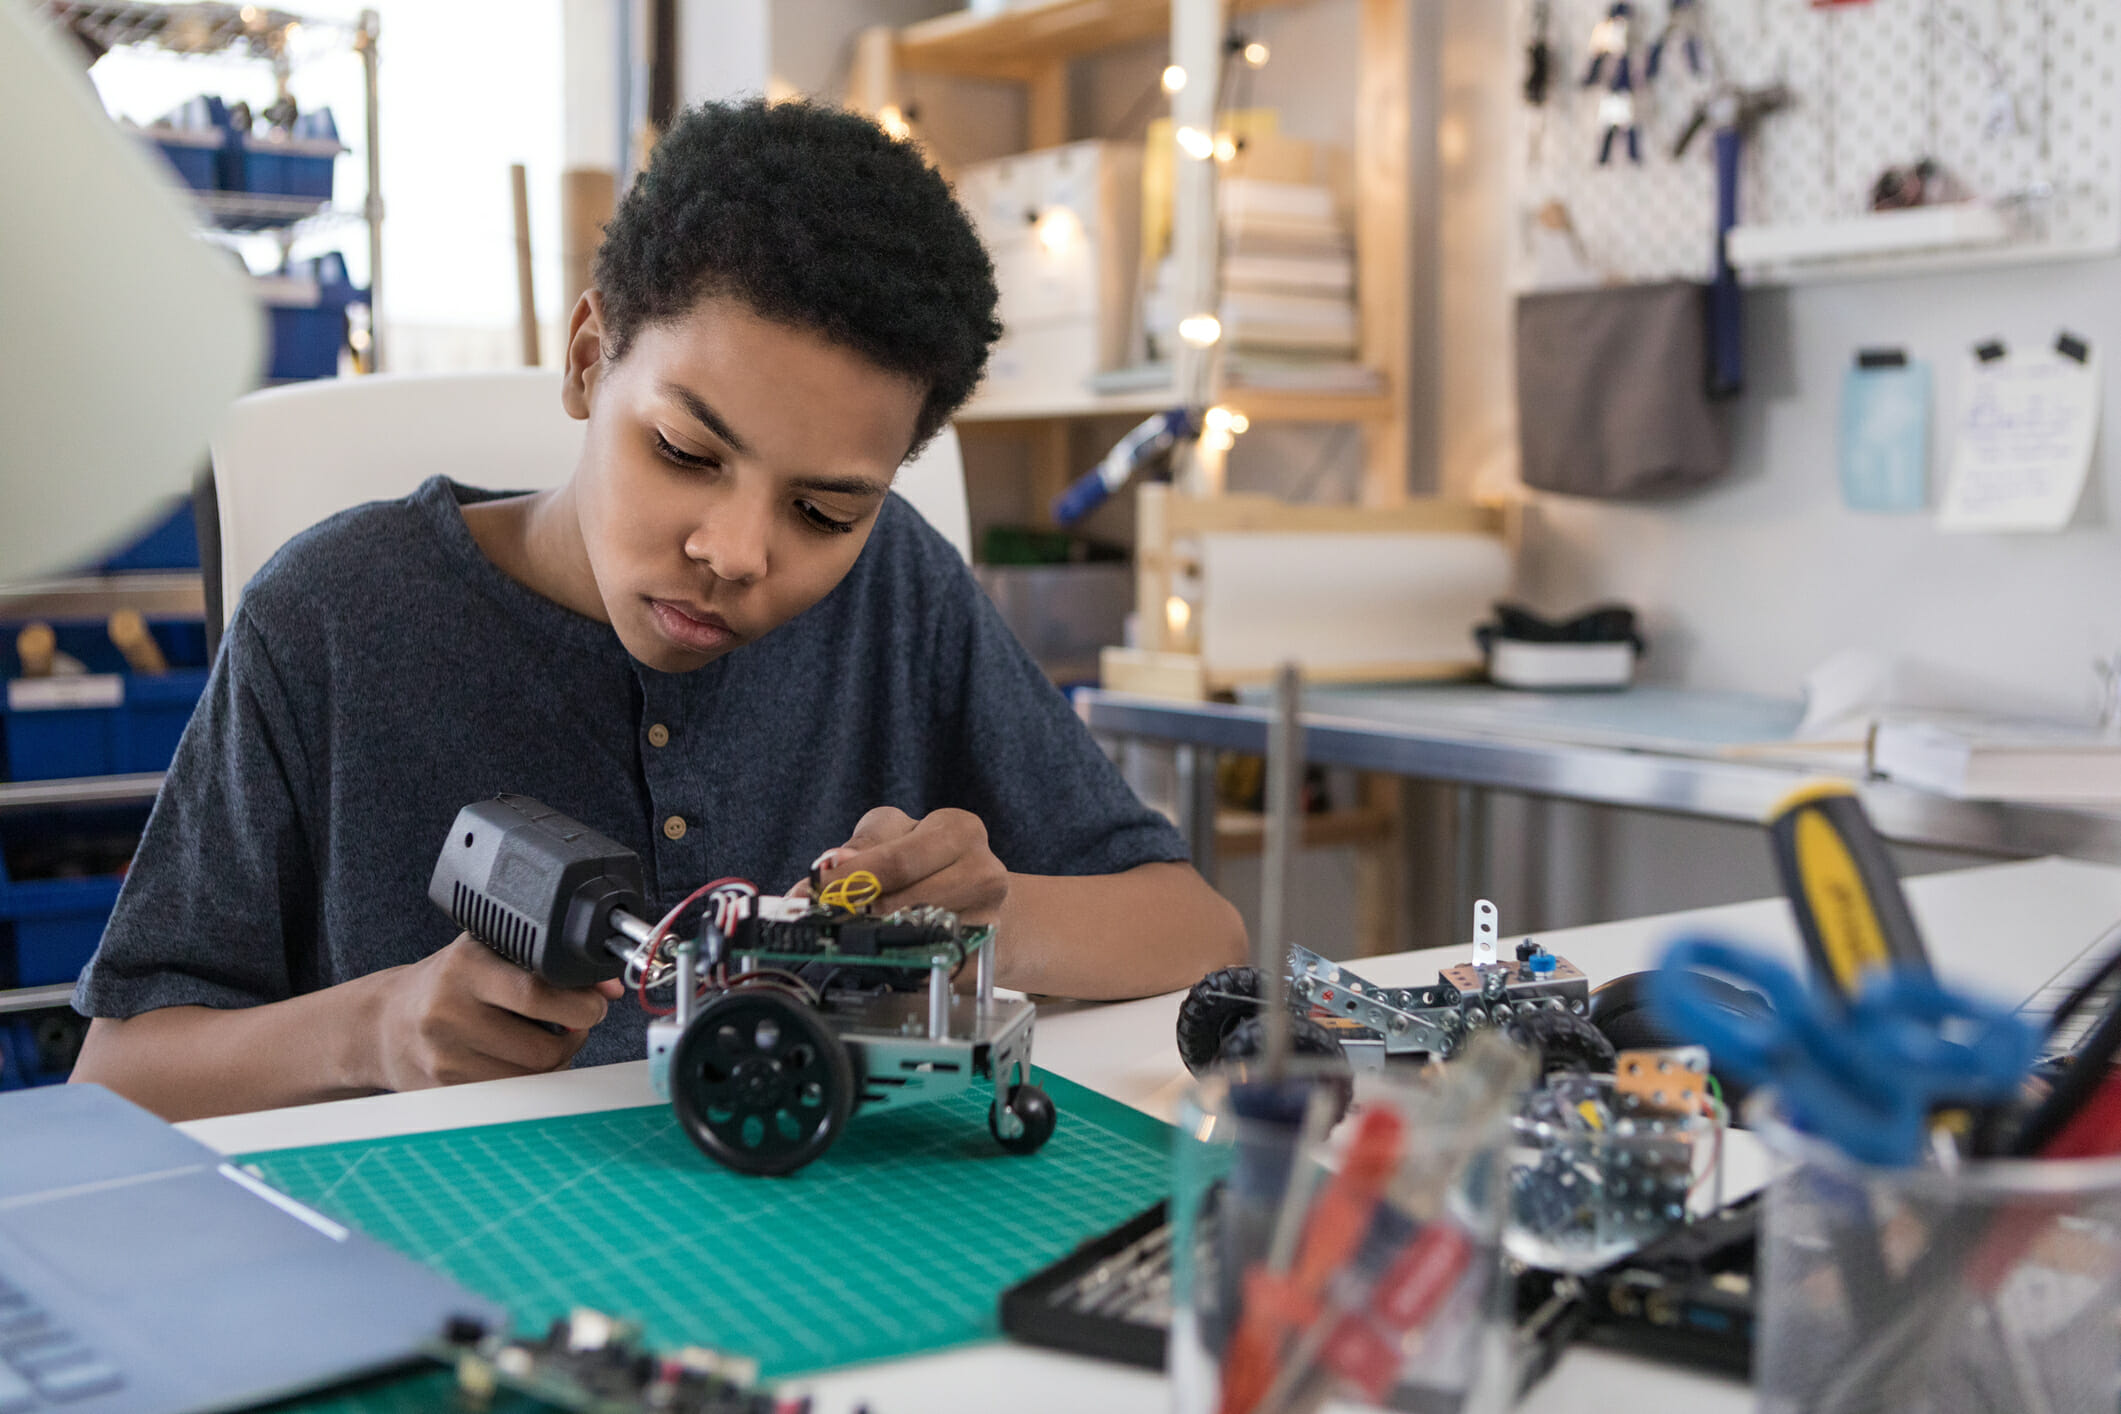 Teen boy solders wires to build robot